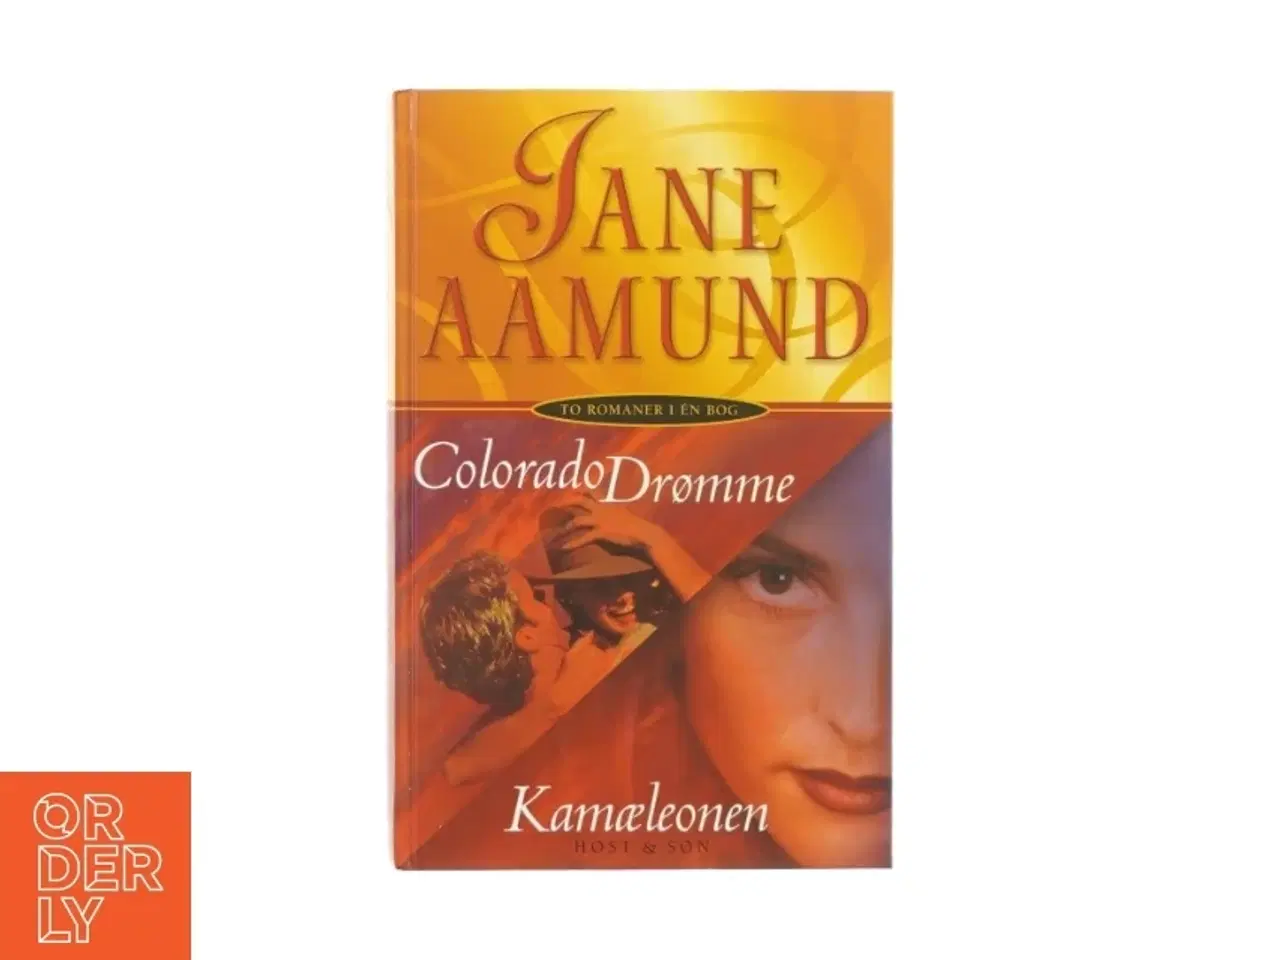 Billede 1 - Colorado drømme og Kamæleonen af Jane Aamund (bog 2i1)